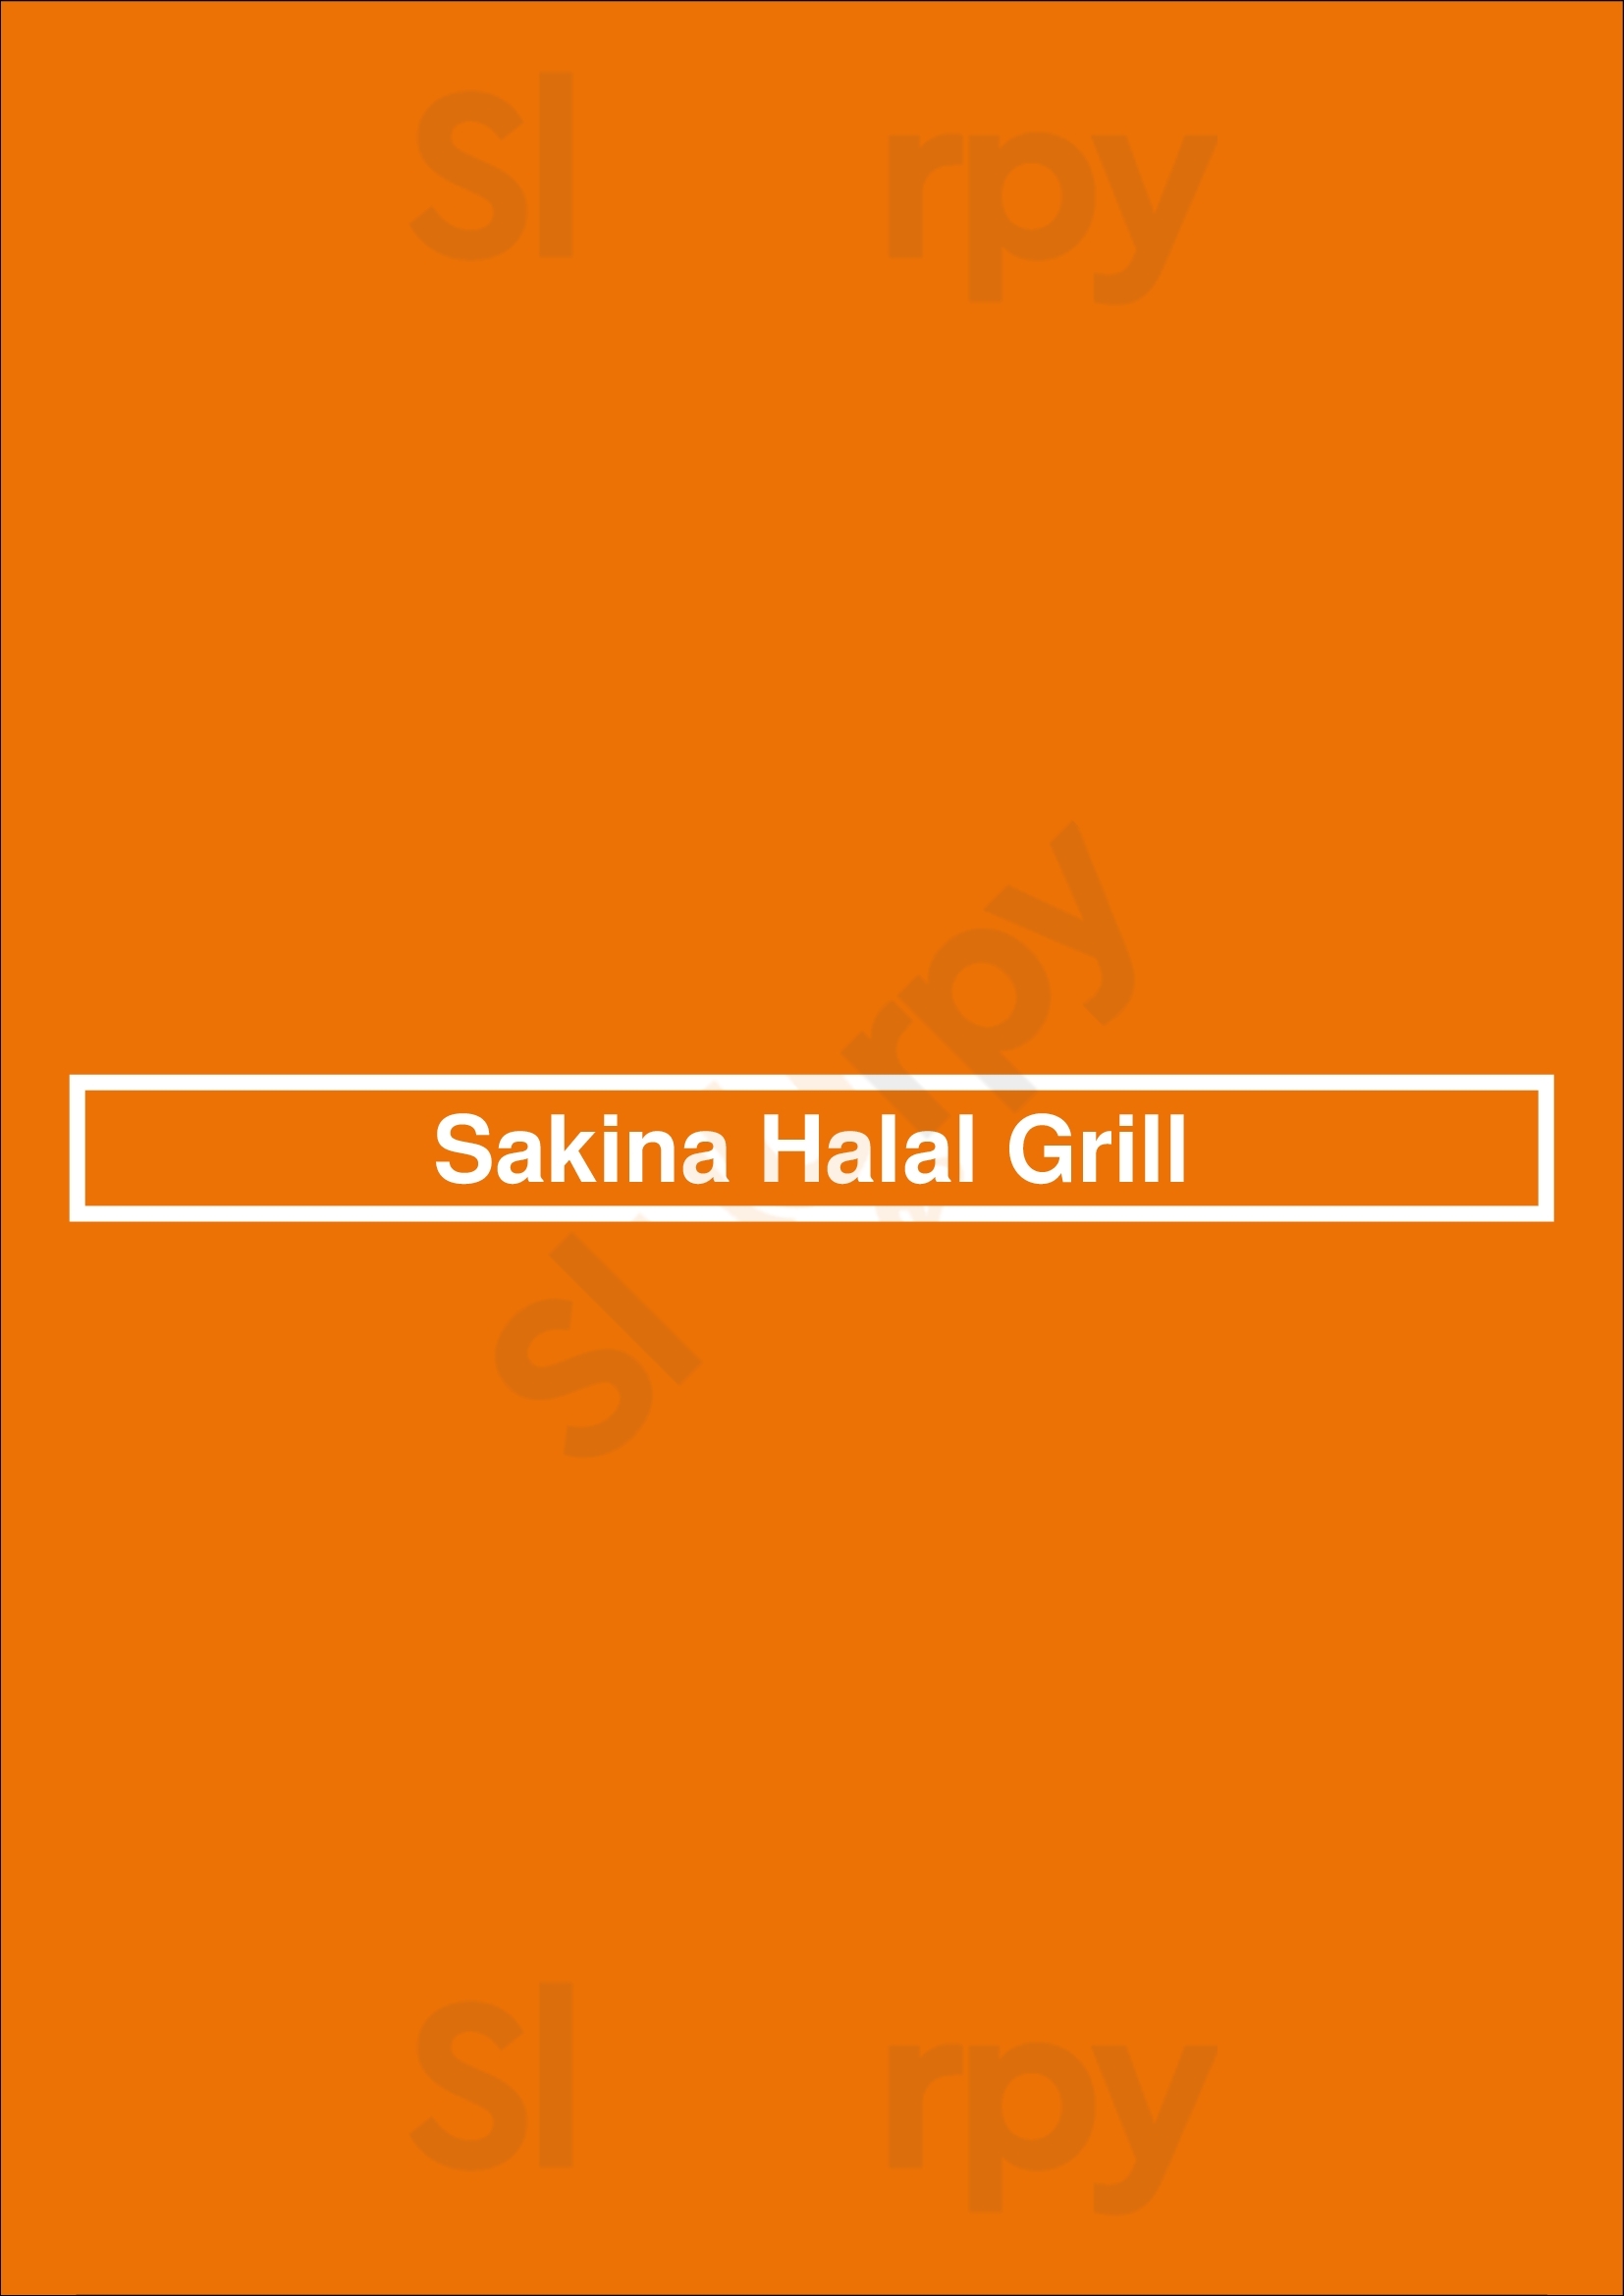 Sakina Halal Grill Washington DC Menu - 1